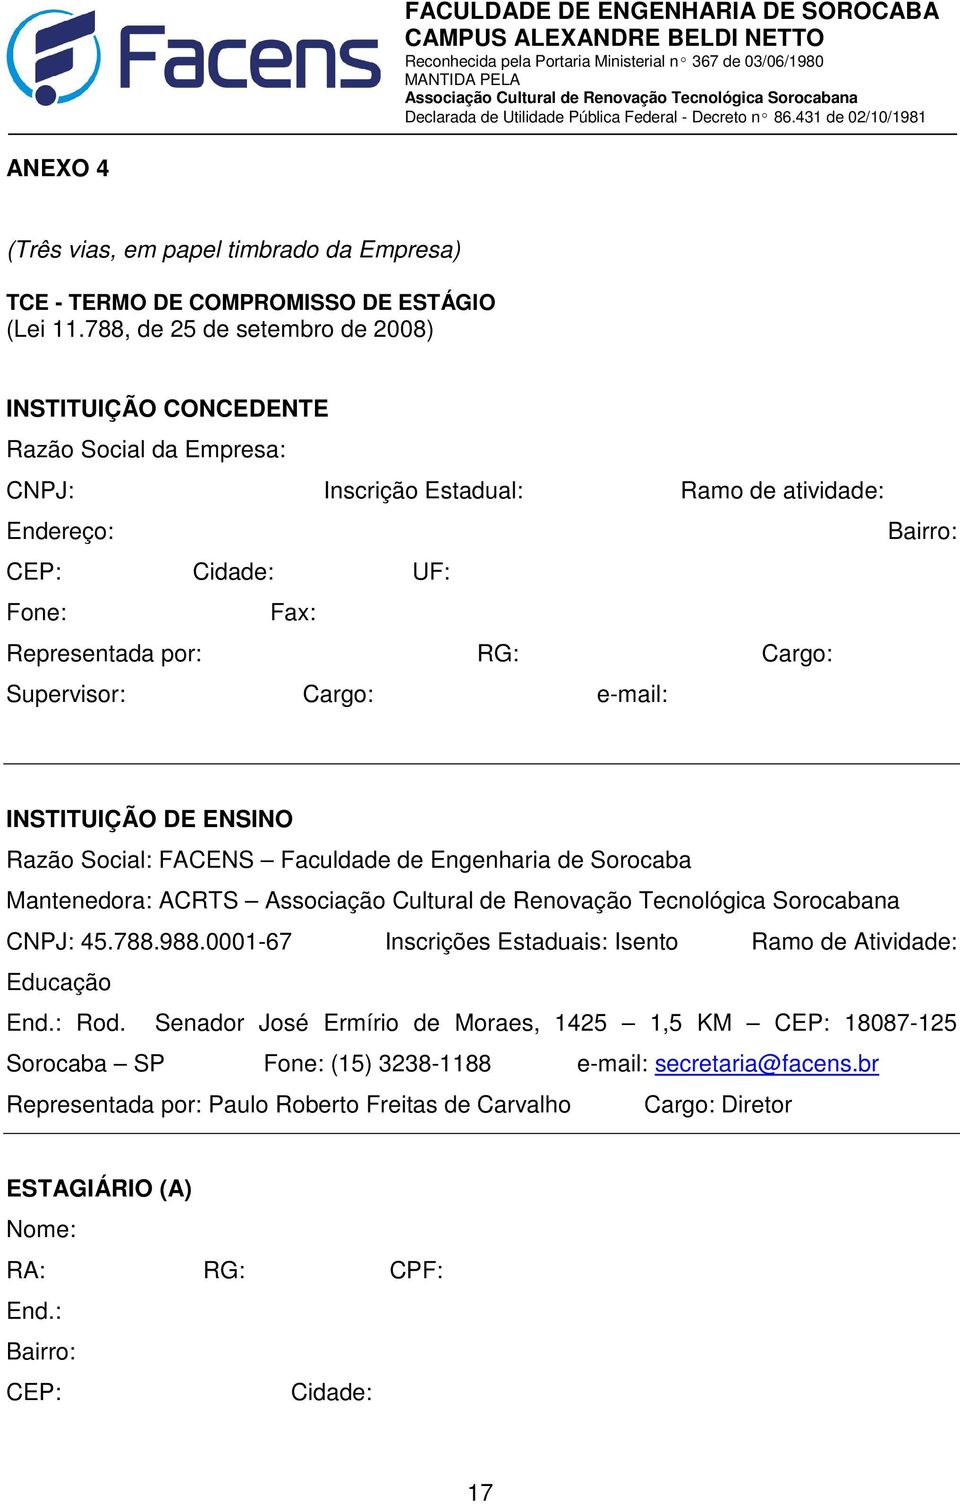 RG: Cargo: Supervisor: Cargo: e-mail: INSTITUIÇÃO DE ENSINO Razão Social: FACENS Faculdade de Engenharia de Sorocaba Mantenedora: ACRTS CNPJ: 45.788.988.